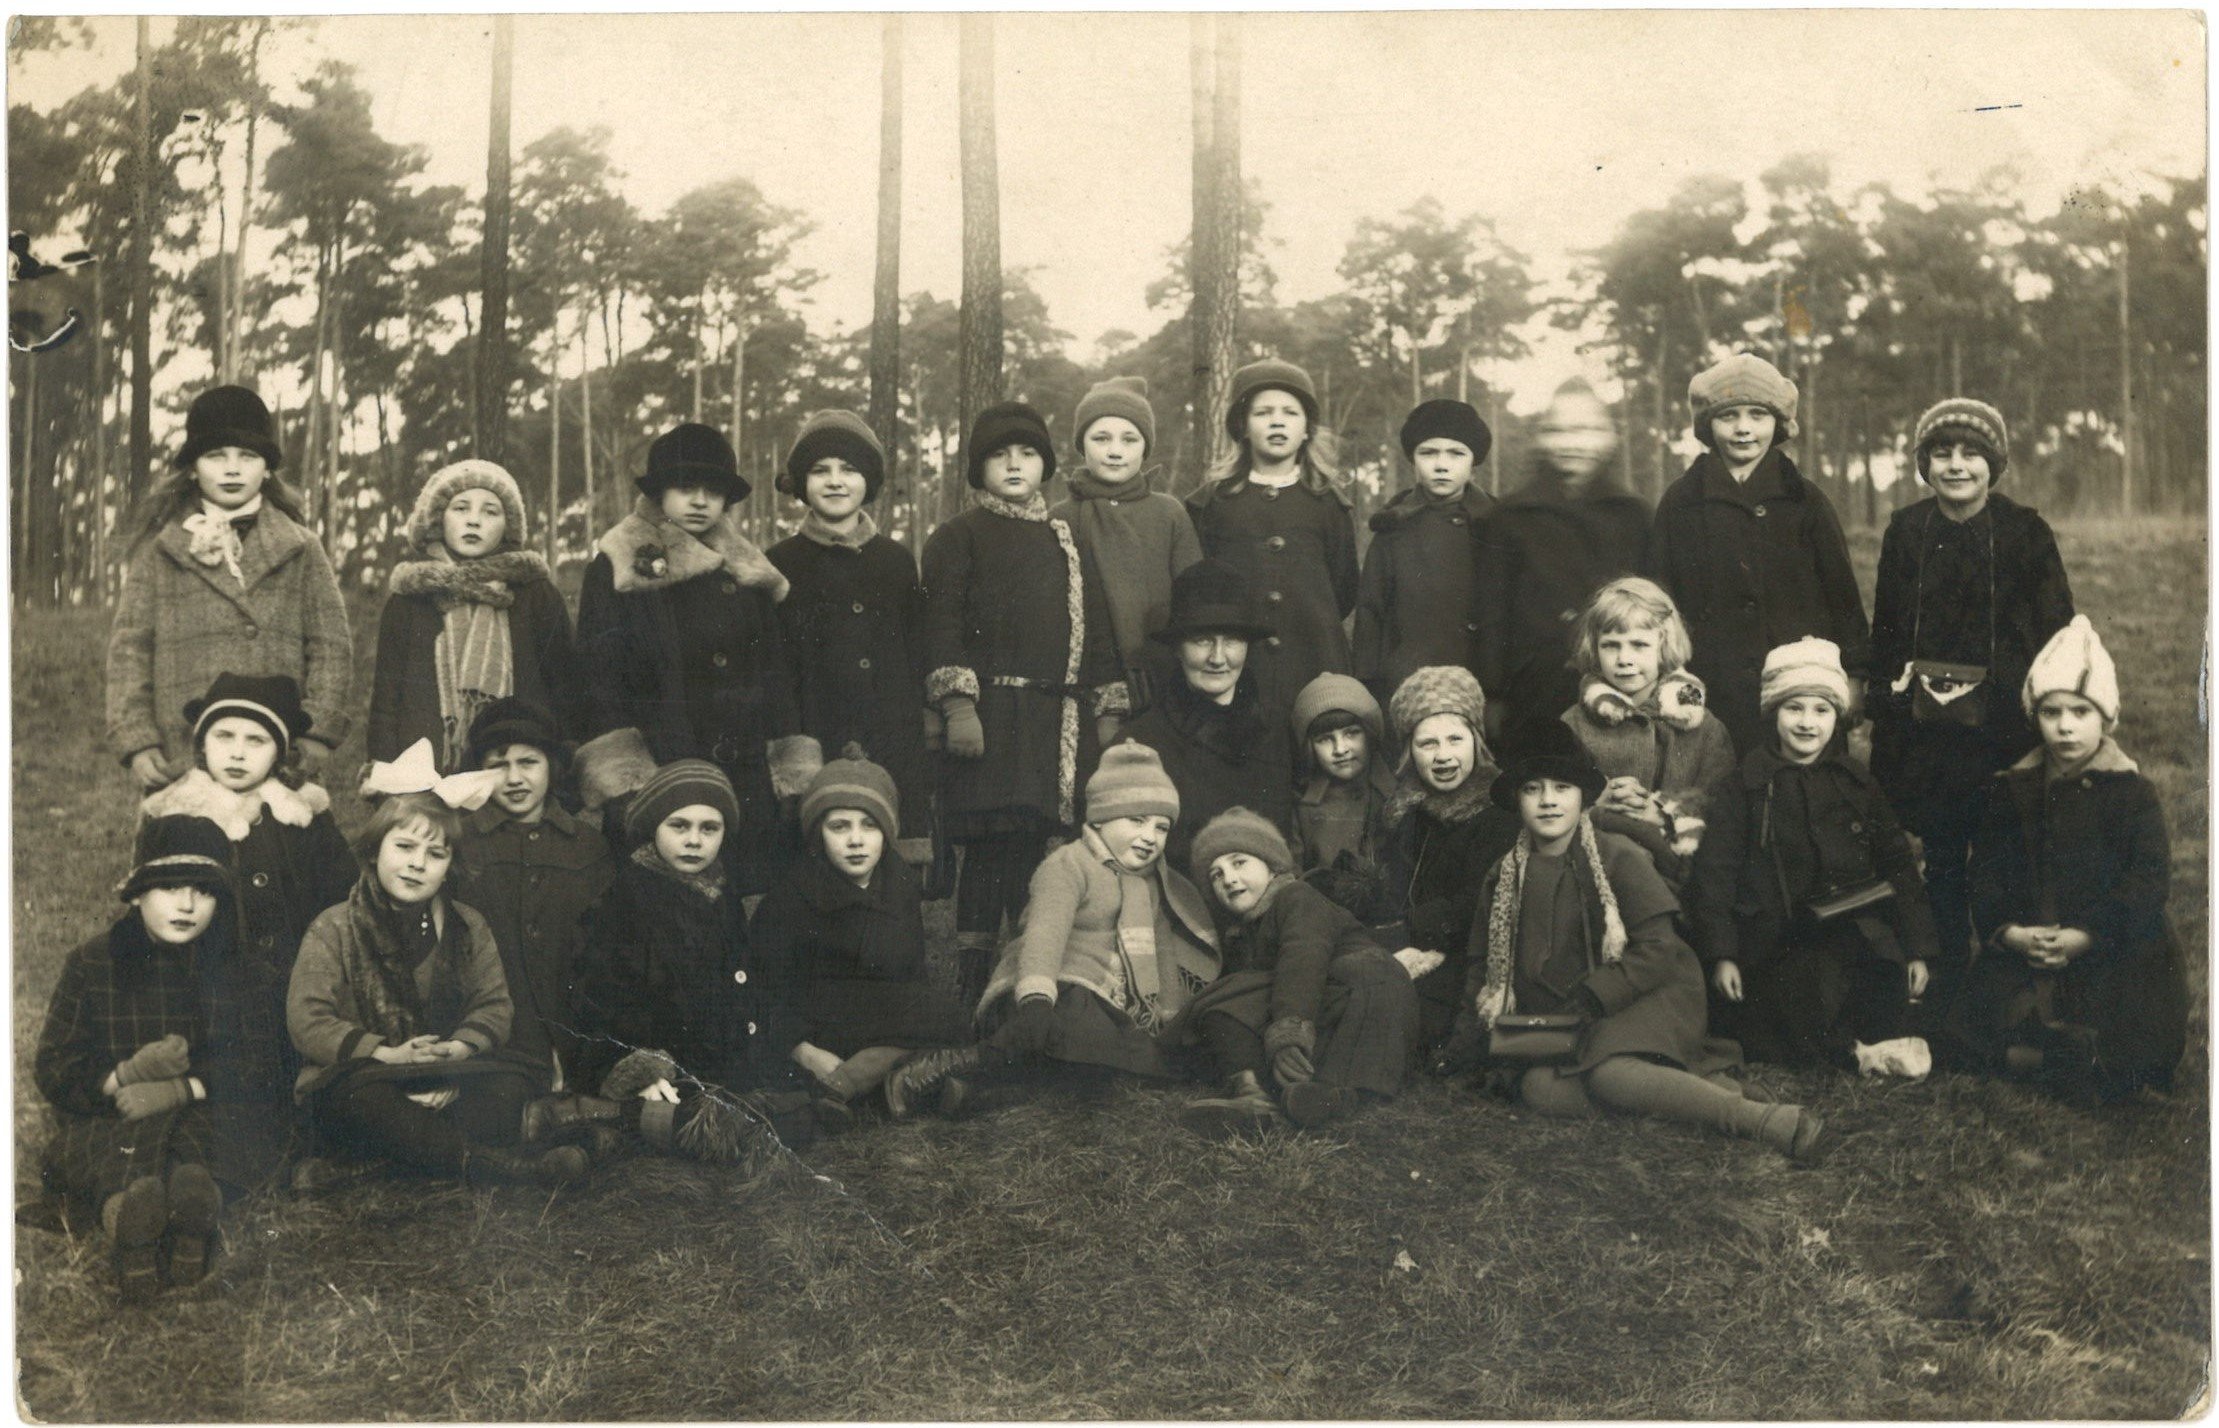 Berlin: Schulausflug einer Mädchenklasse um 1927 (Landesgeschichtliche Vereinigung für die Mark Brandenburg e.V., Archiv CC BY)